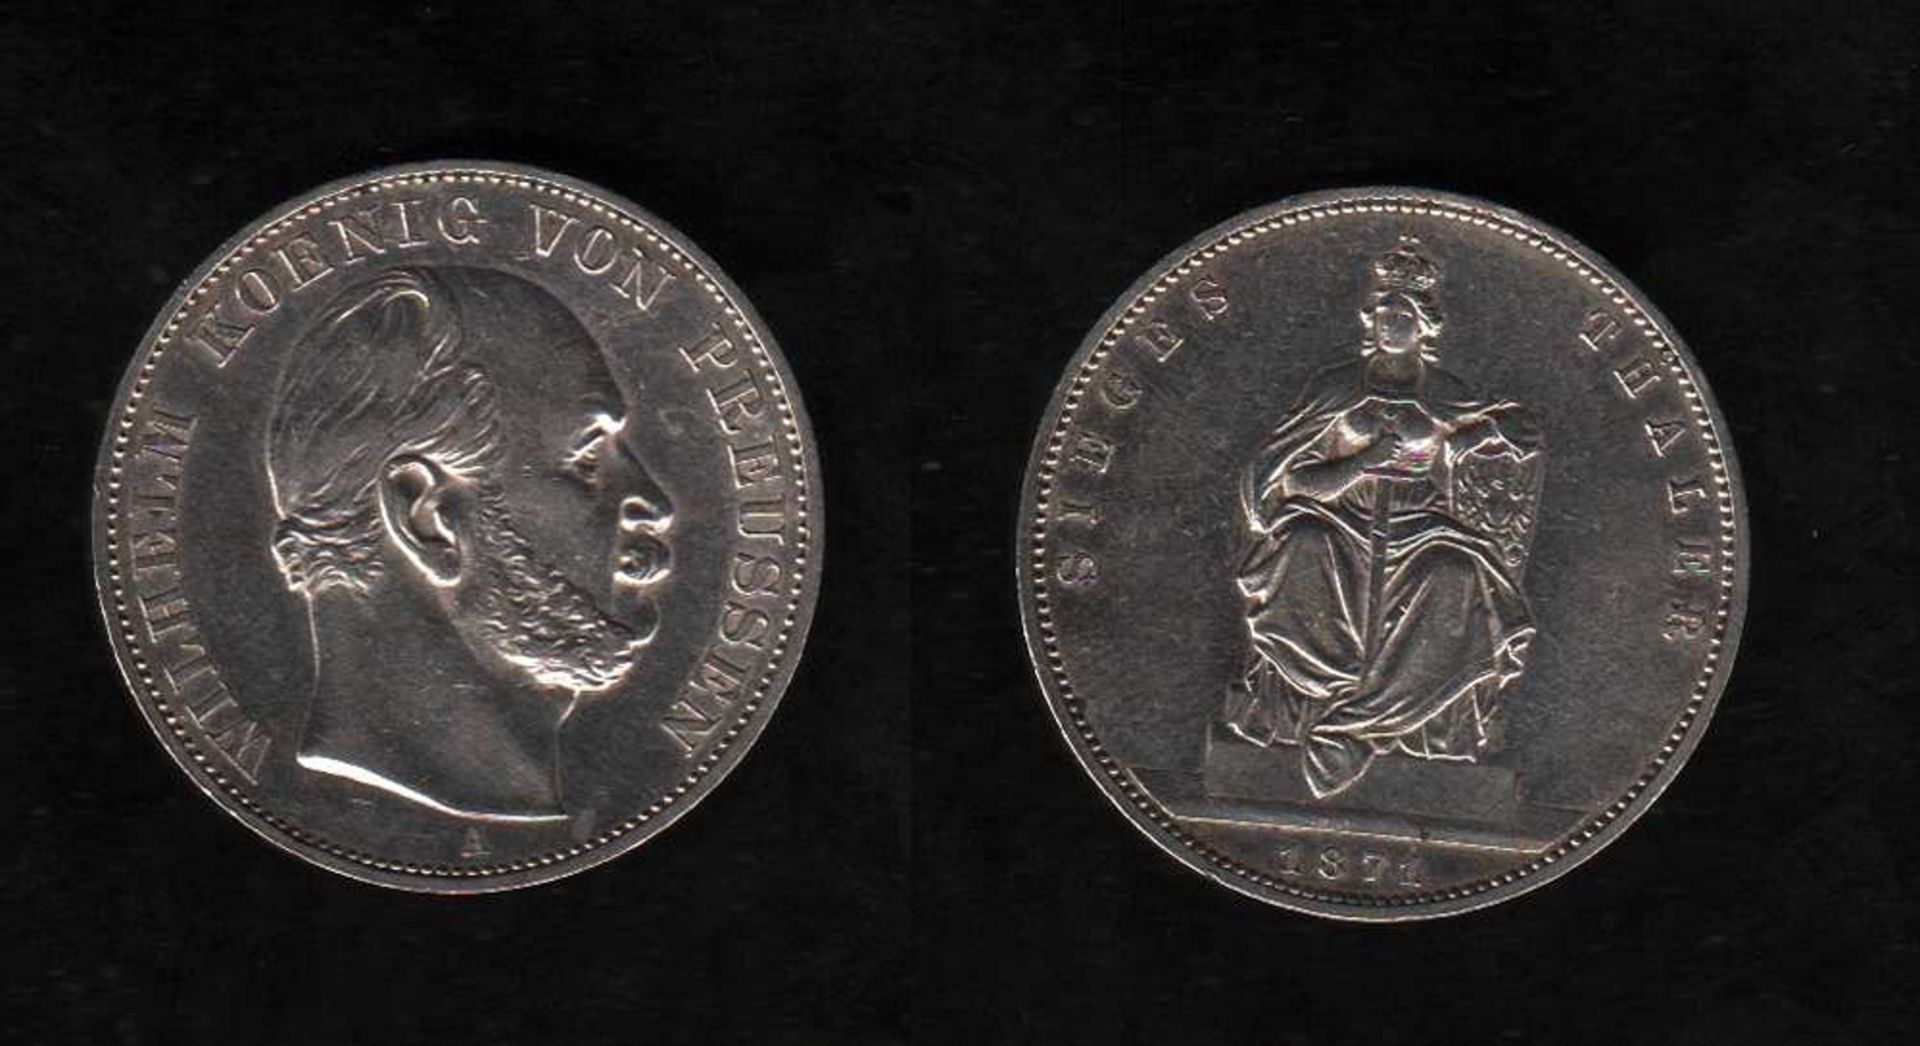 # Preußen. Silbermünze. Siegestaler auf den Sieg gegen Frankreich 1871. Wilhelm I., König von